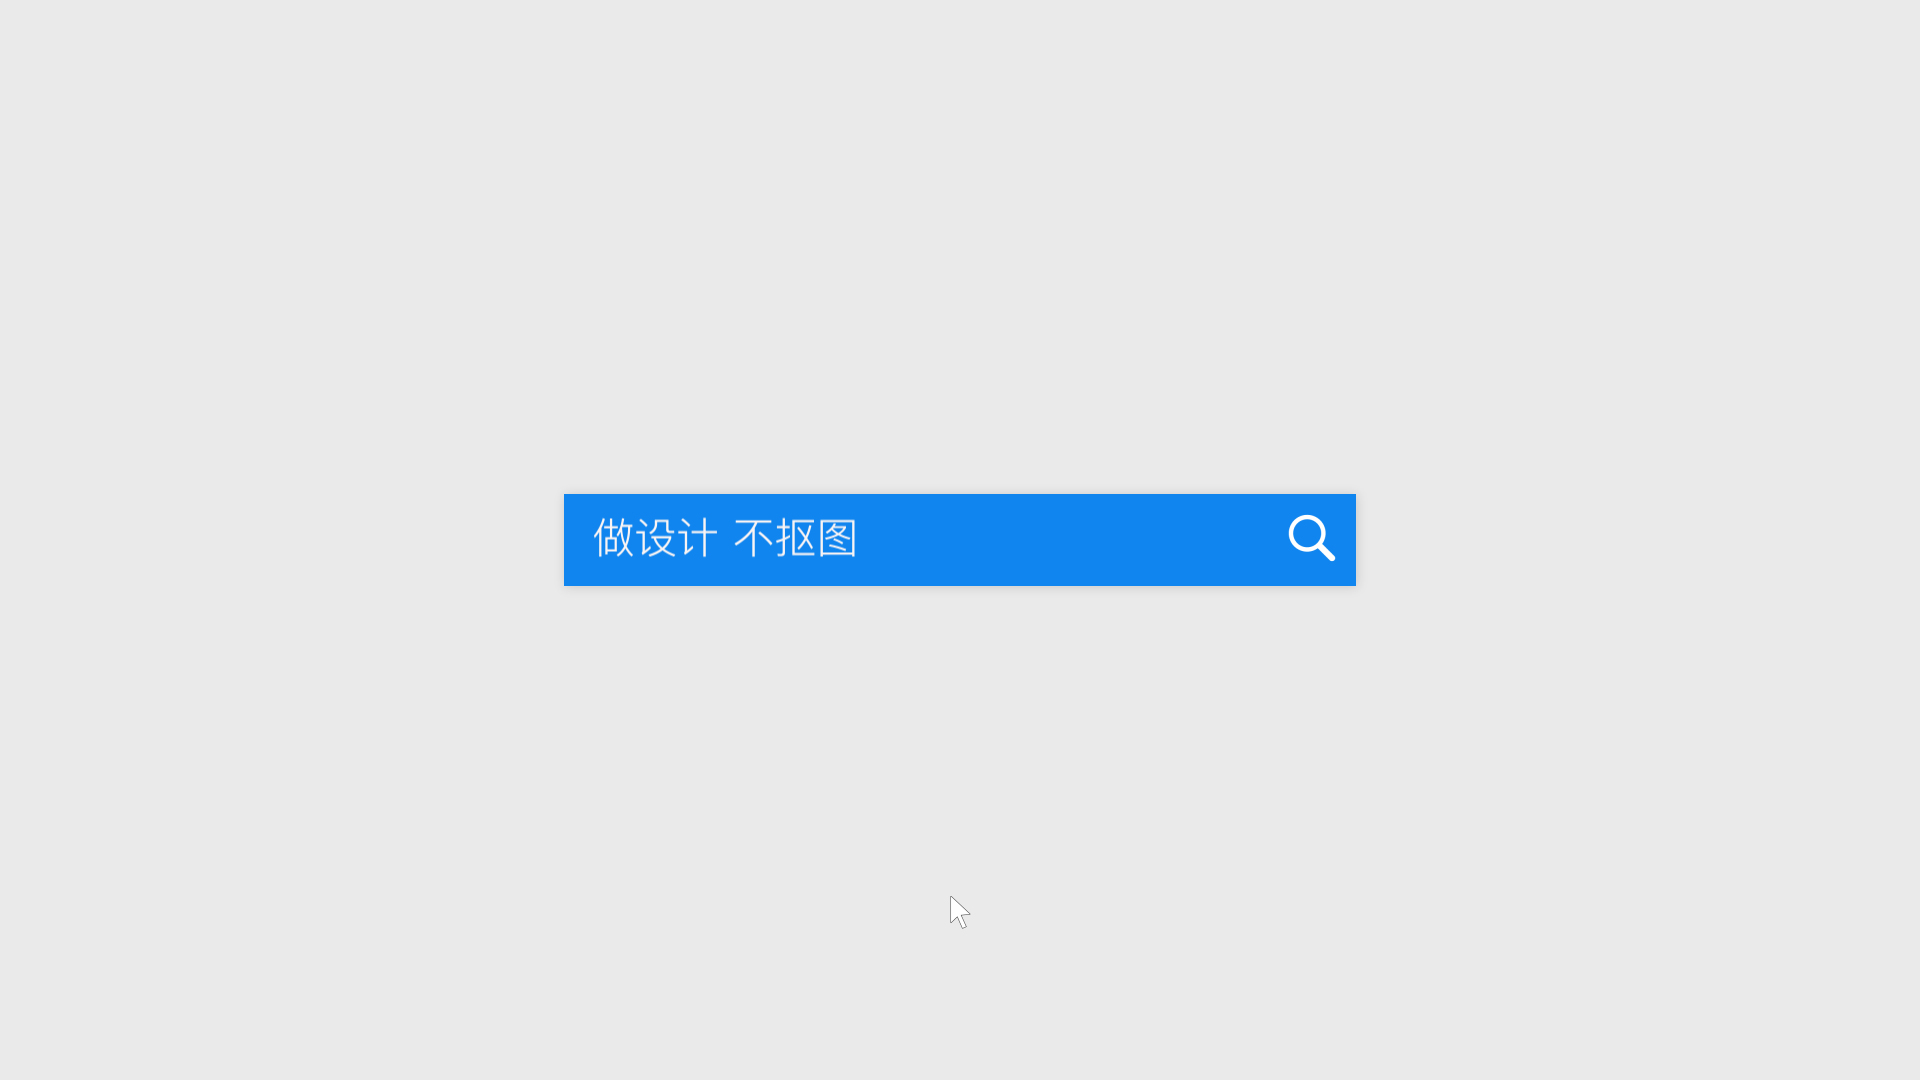 网页设计中文字与图片结合经典技巧——文字遮罩的运用案例